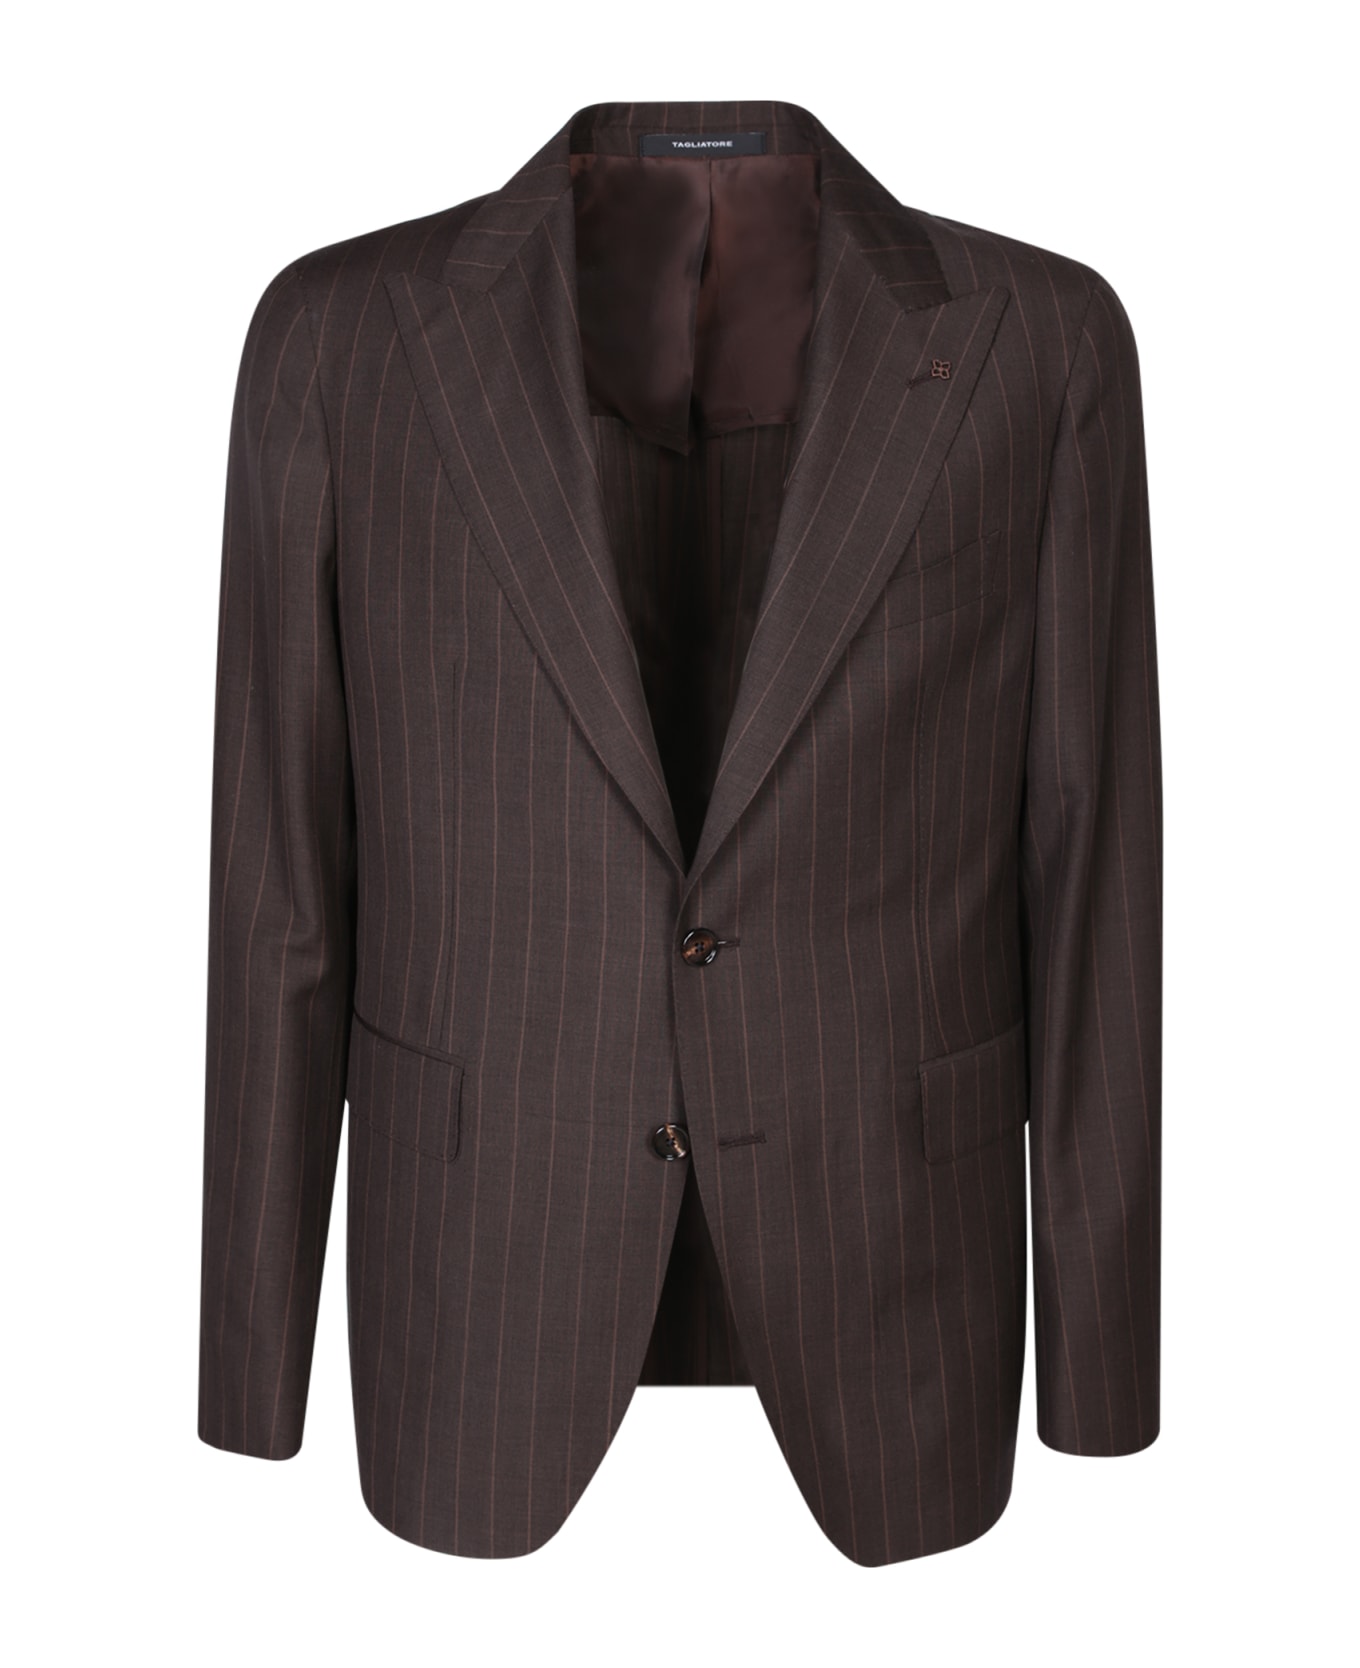 Tagliatore Vesuvio Brown/beige Suit - Beige